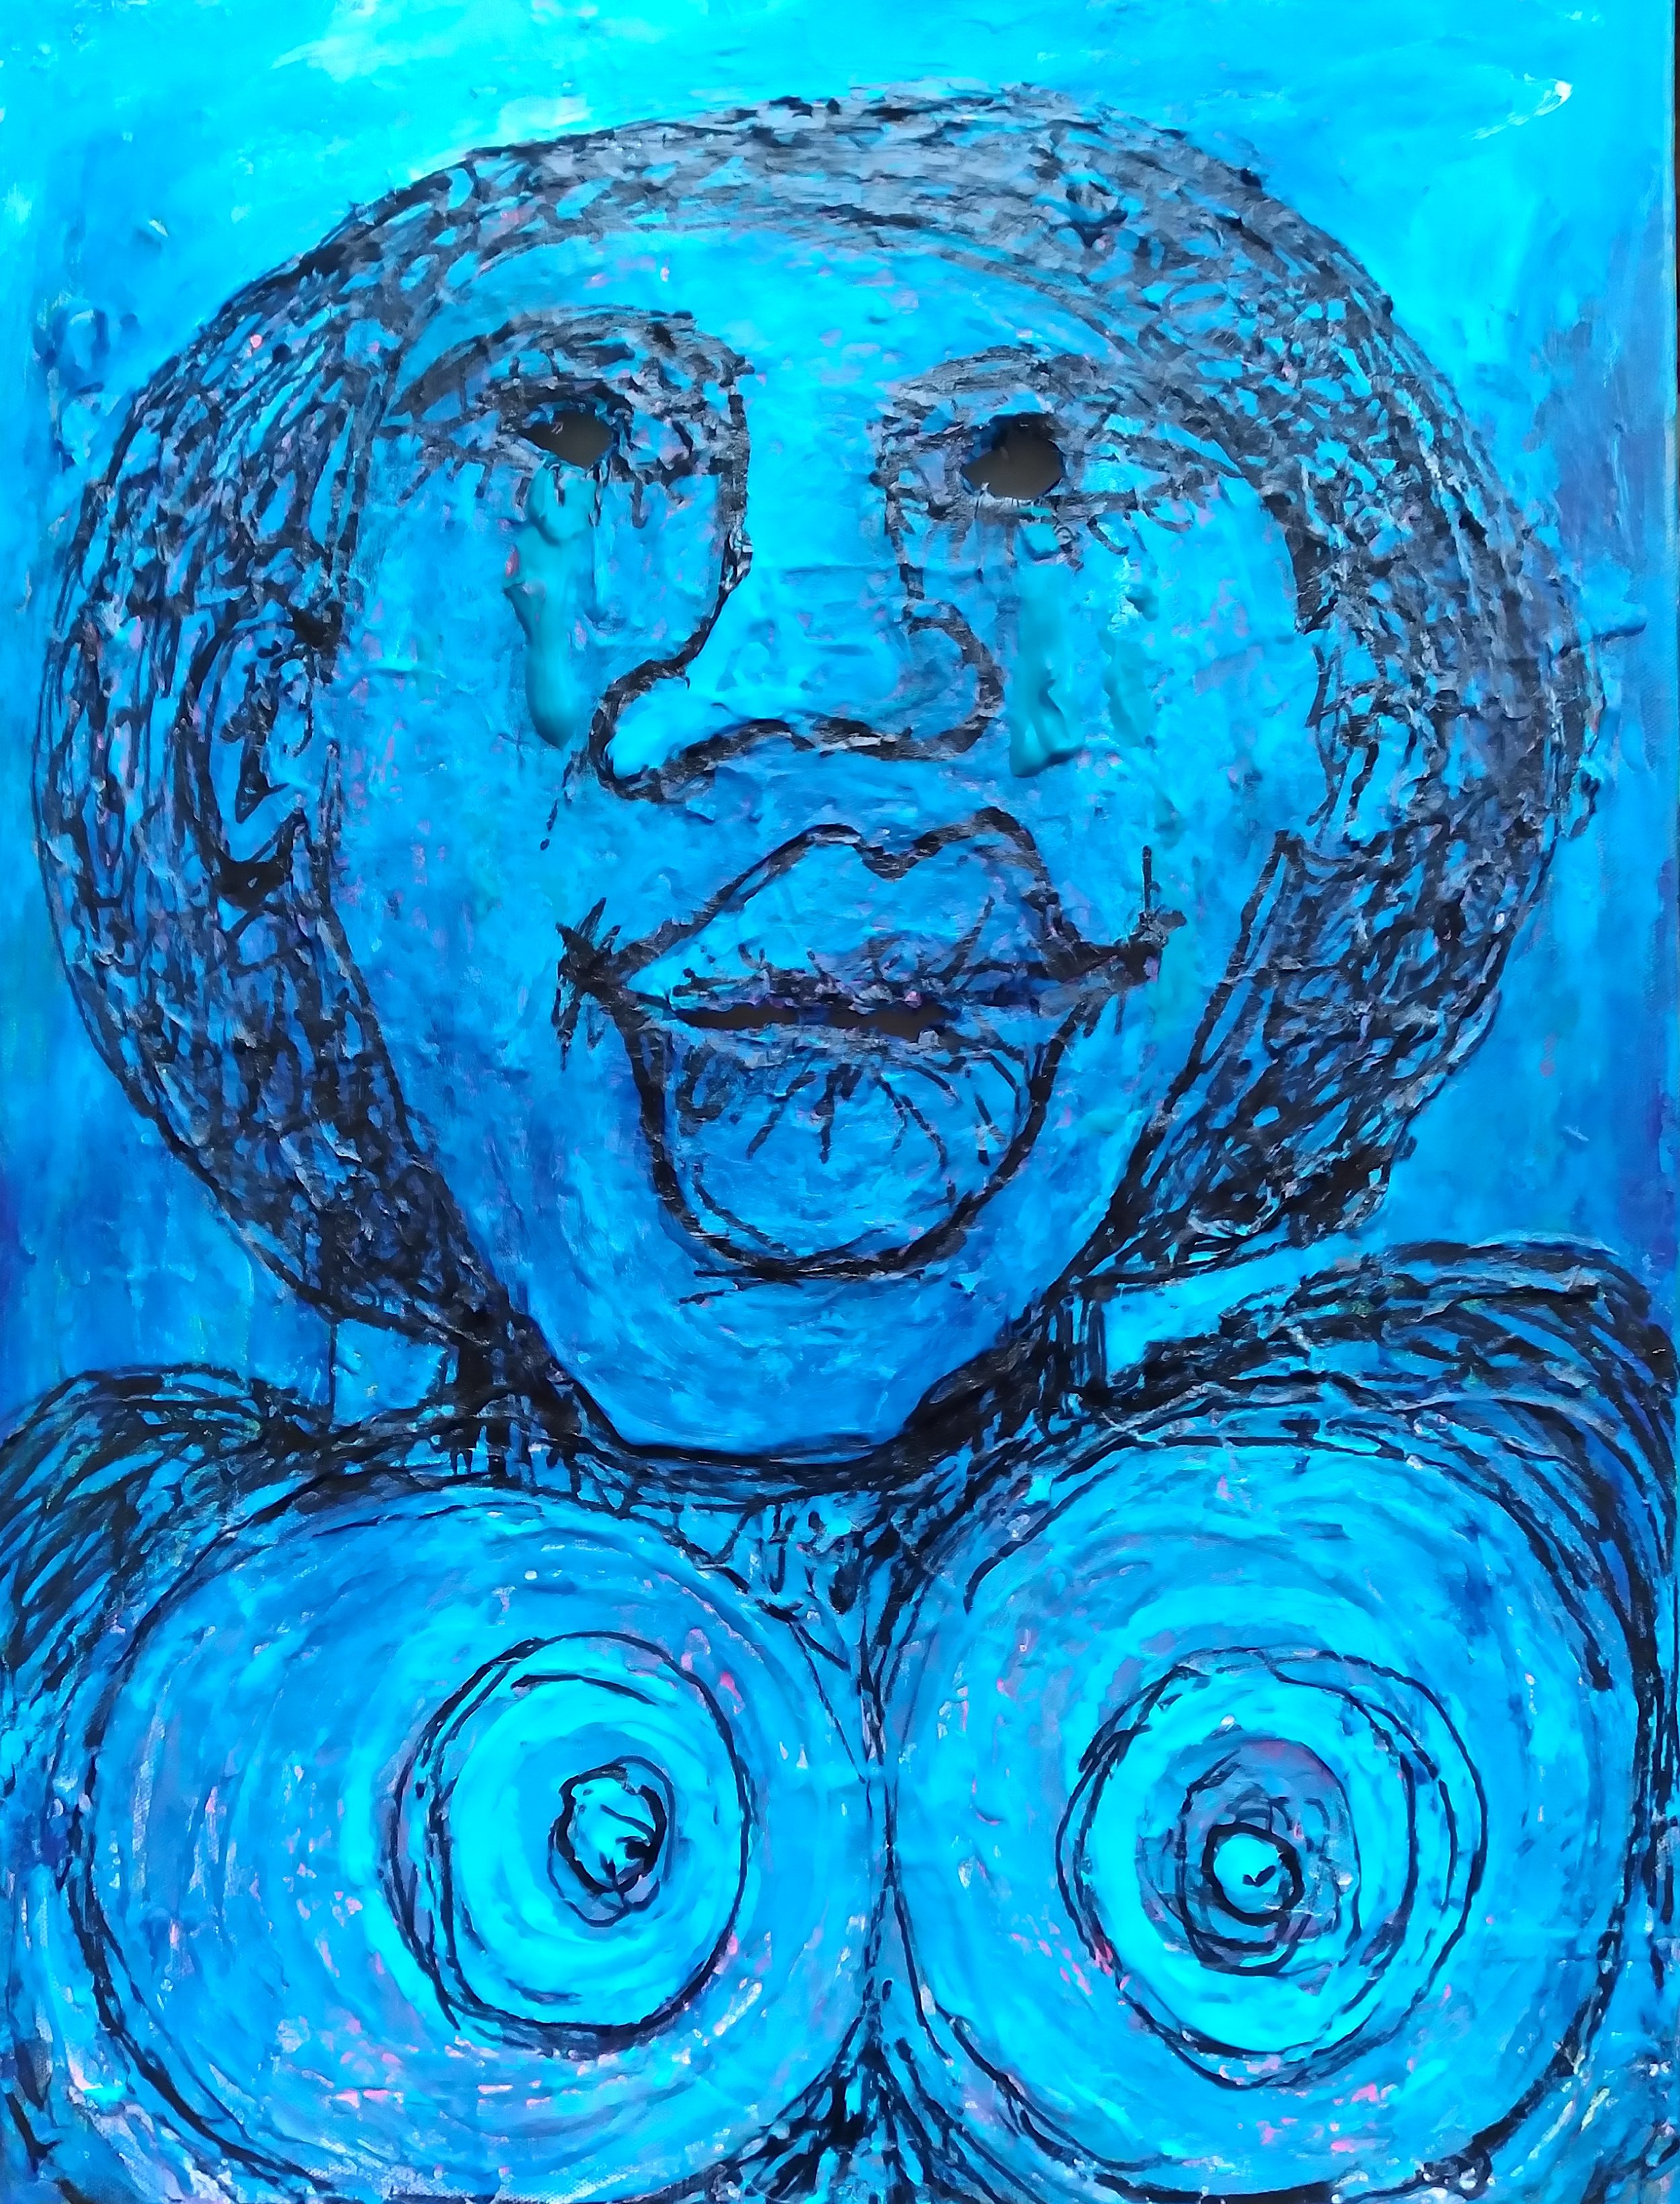 Blue Moon, 2014. Oil, acrylic on canvas. 24” x 18”.